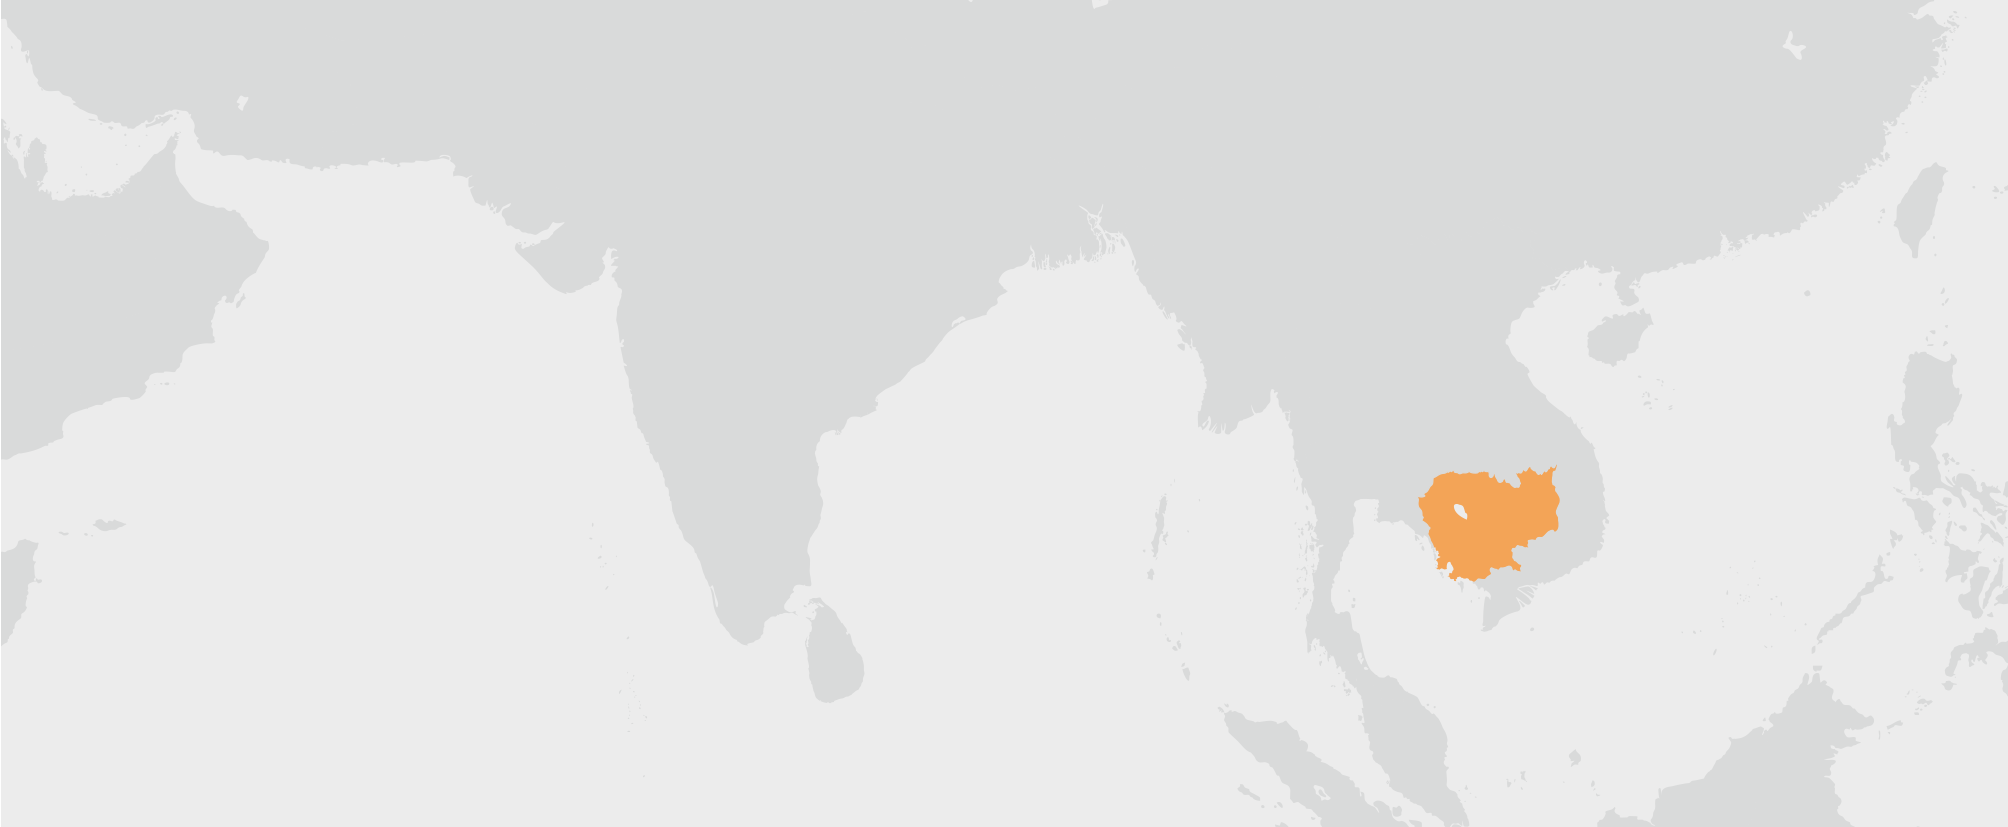 Kambodža - umístění na mapě